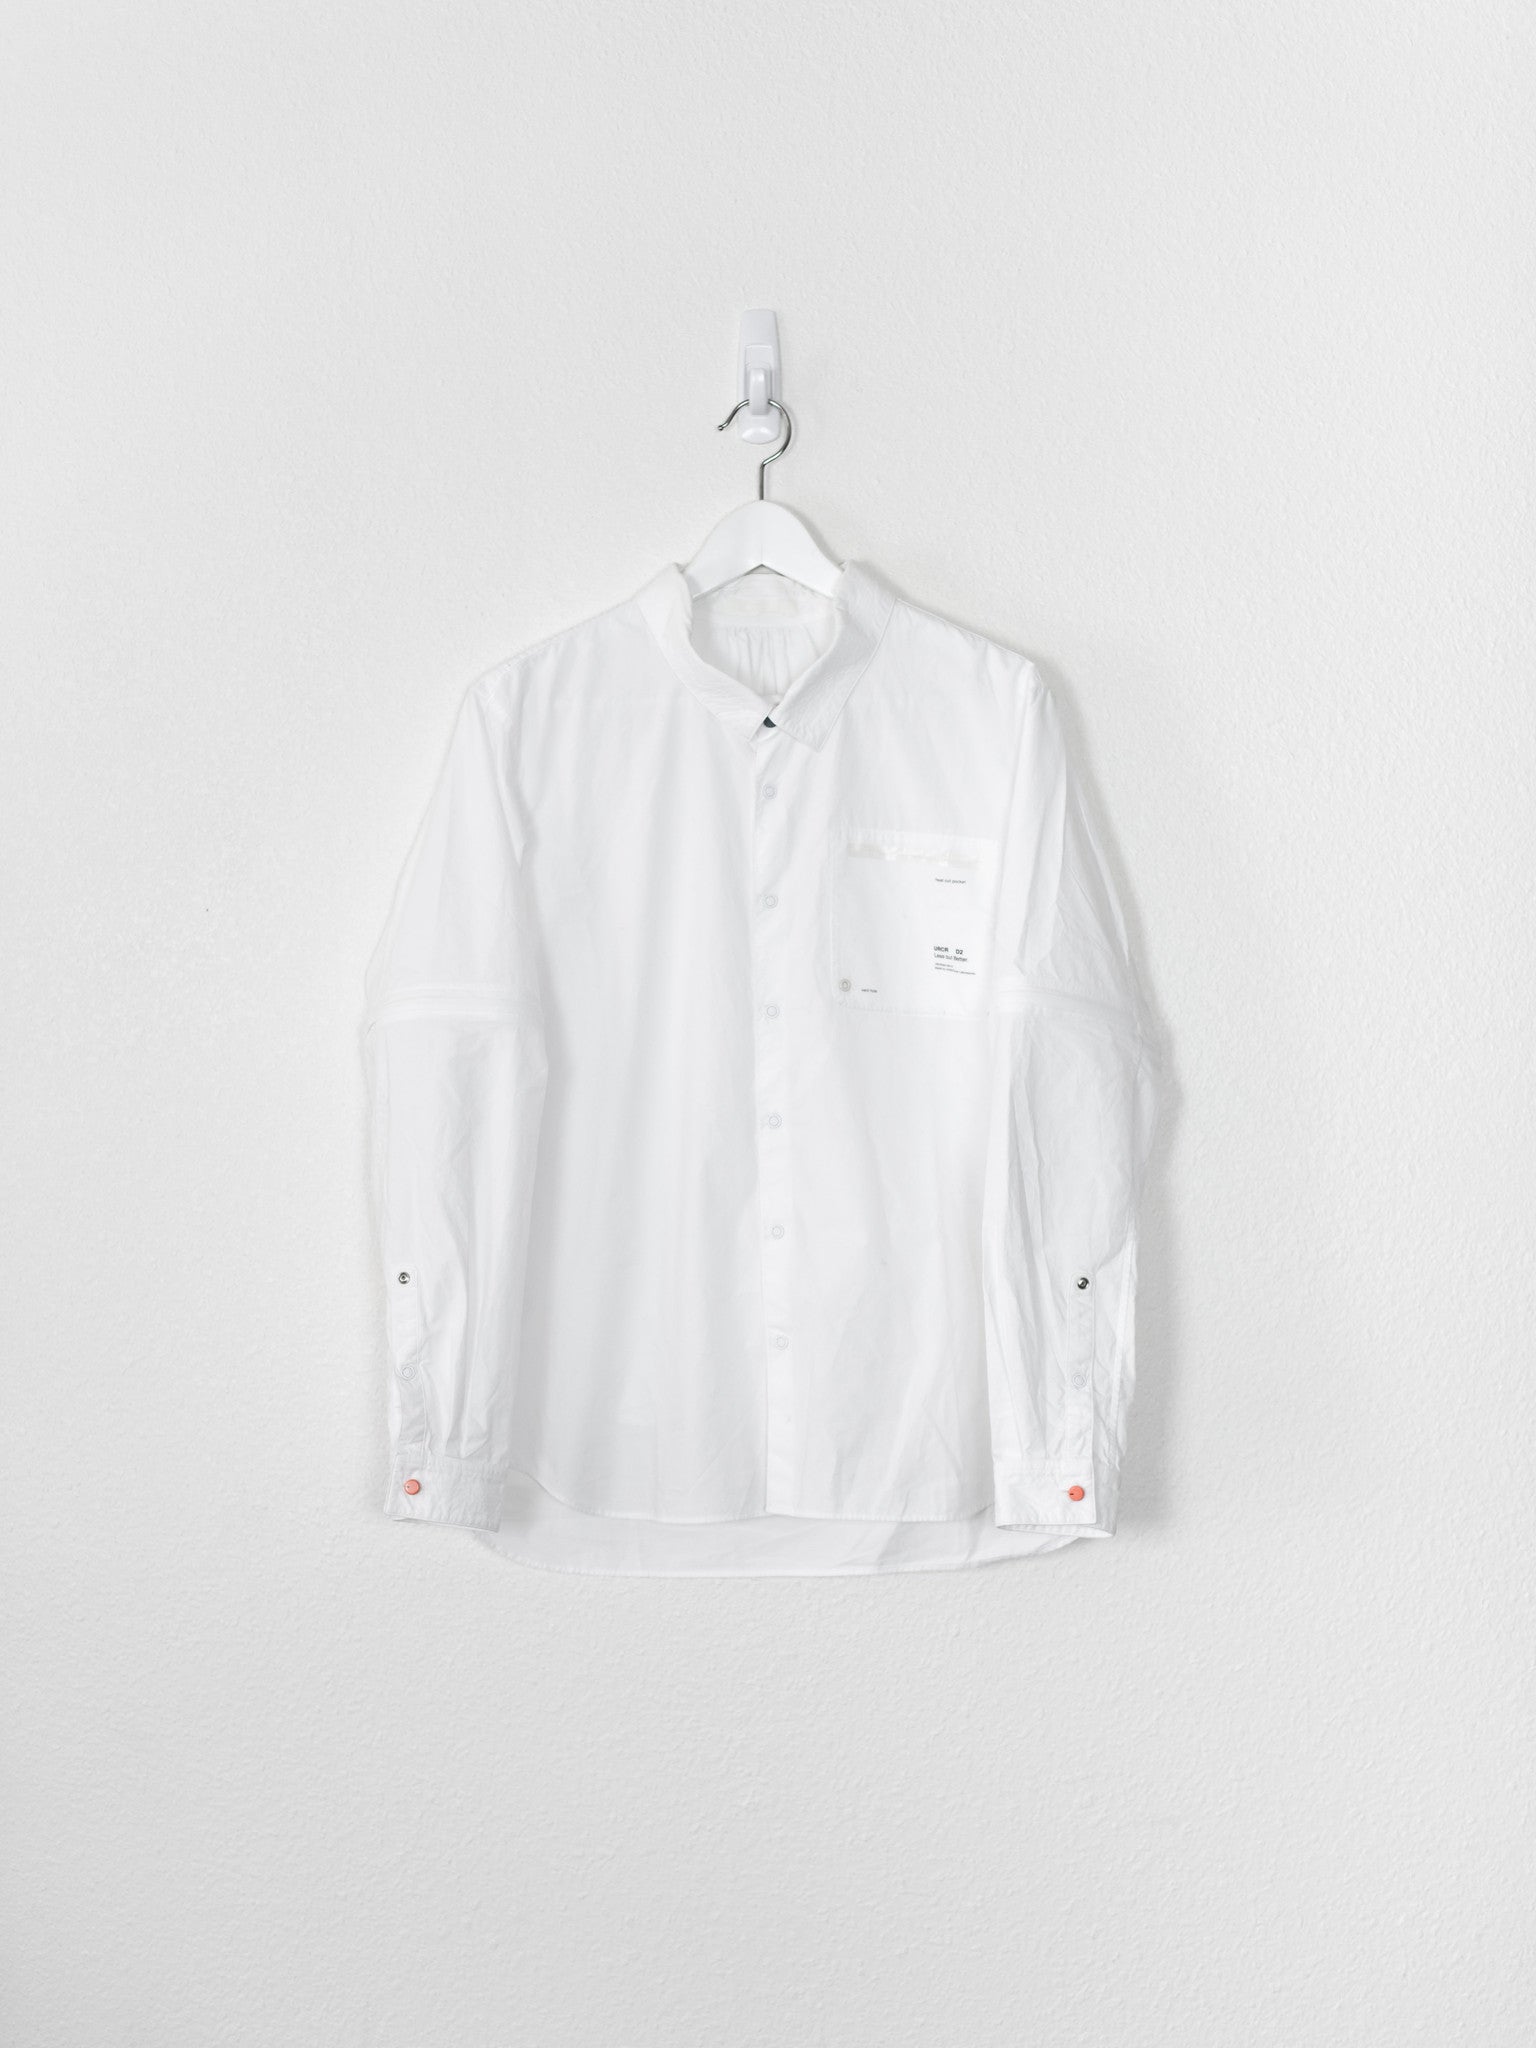 Undercover SS10 Less But Better Convertible Sleeve Shirt – HUIBEN